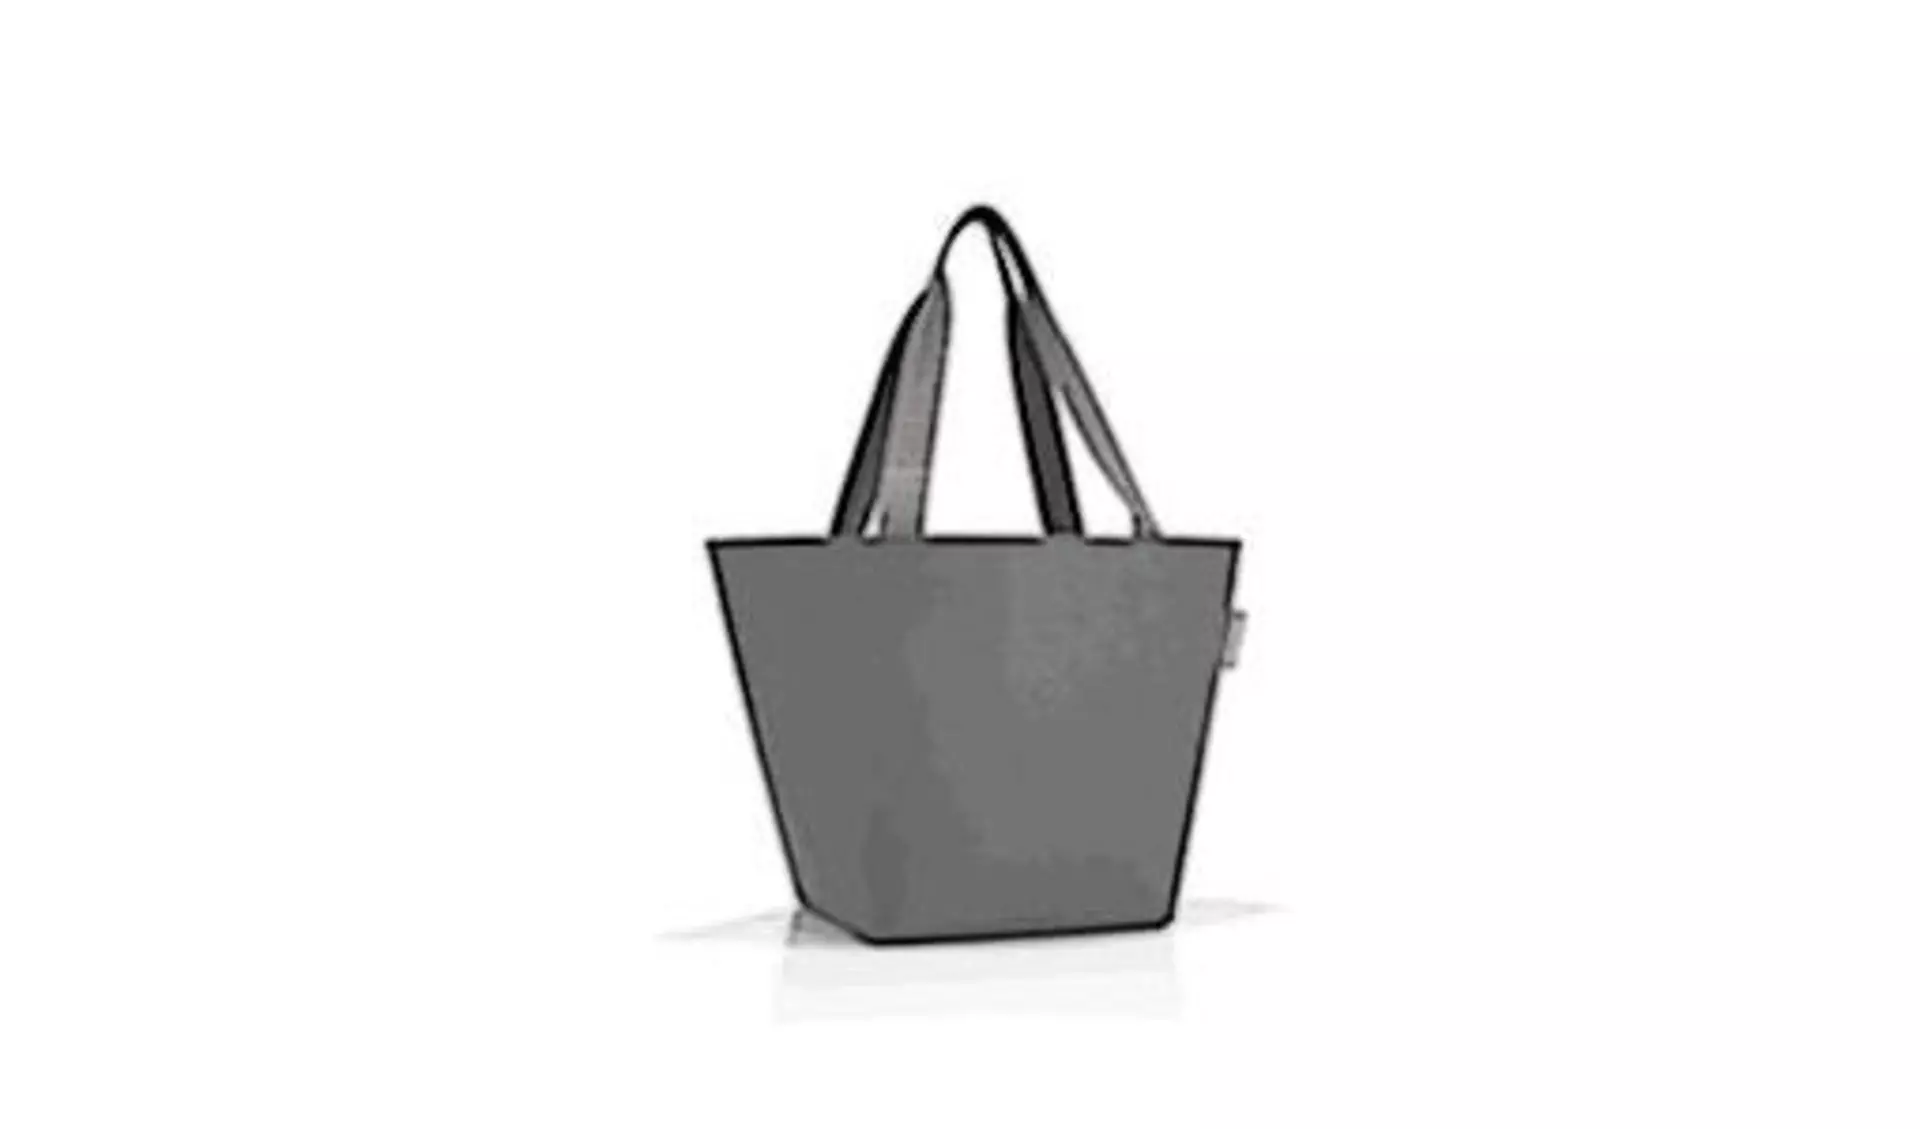 Graue Tasche in Trichterform mit langen Henkeln steht als Icon für alle Taschen und Beutel.